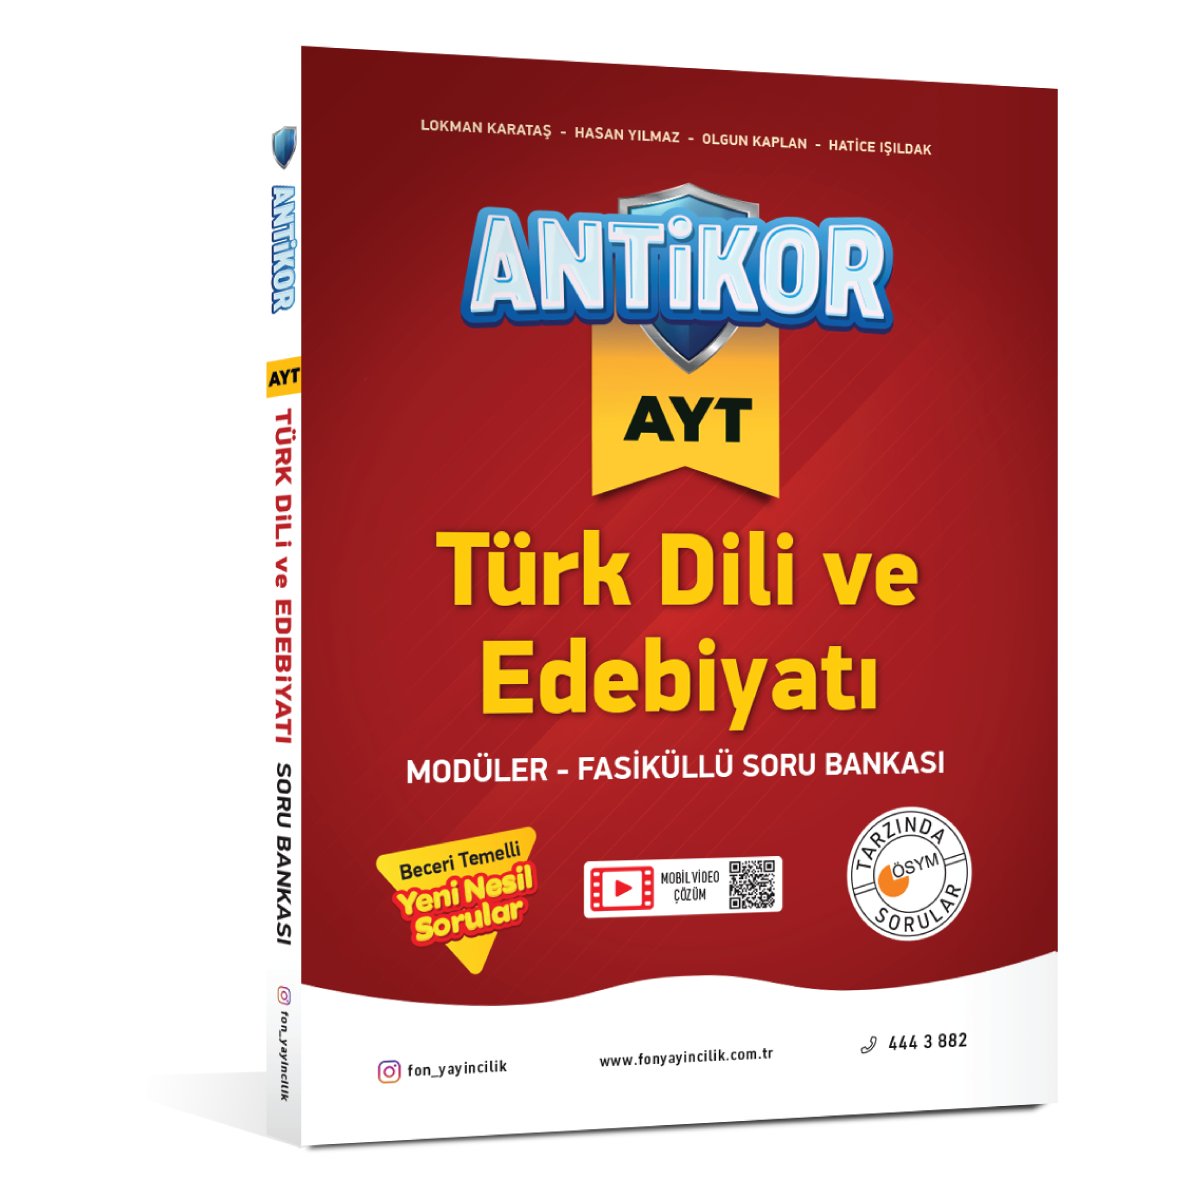 ANTİKOR AYT Türk Dili ve Edebiyatı Soru Bankası